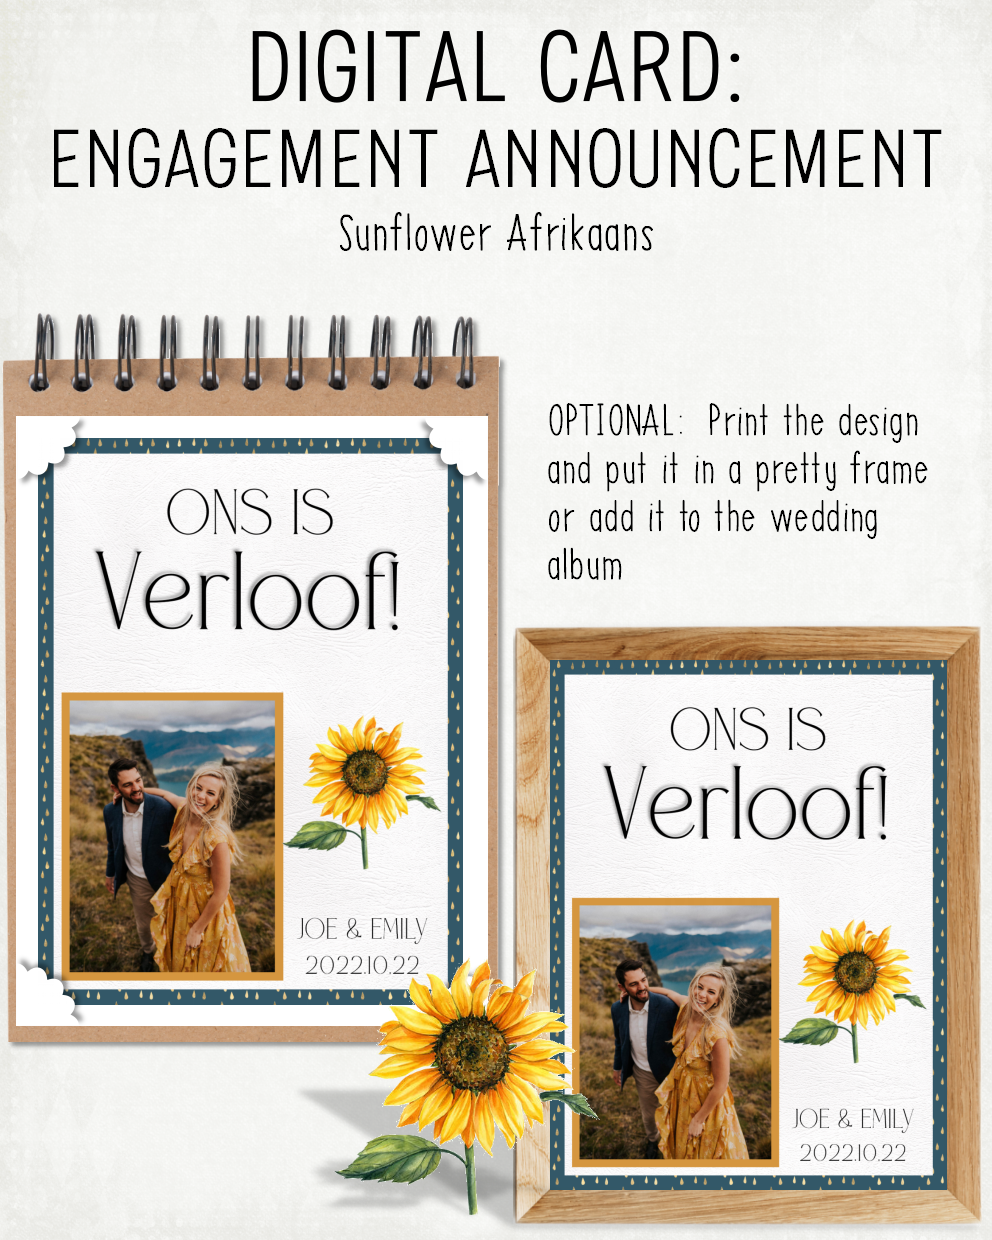 DIGITAL CARD: Engagement Announcement - Sunflower (Afrikaans)